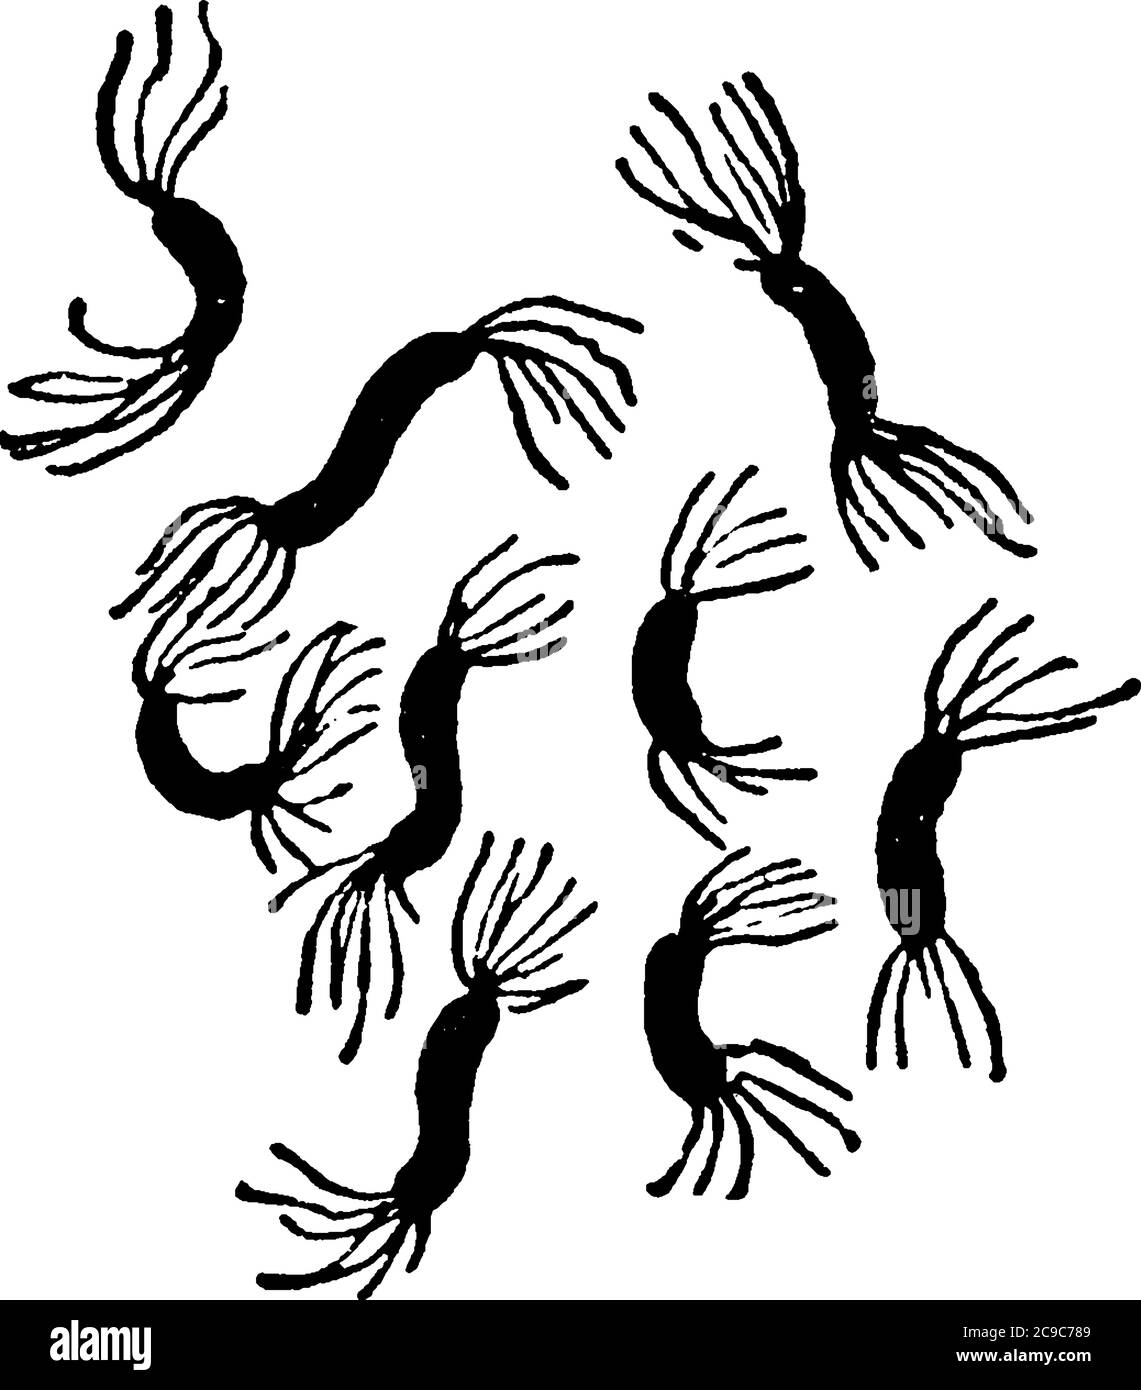 Eine typische Darstellung der motilen und spiralförmigen Bakterien, Spirillum rubrum, Esmarsch, eine Form von Bakterien, die Zilien und ihre arrangemen zeigen Stock Vektor